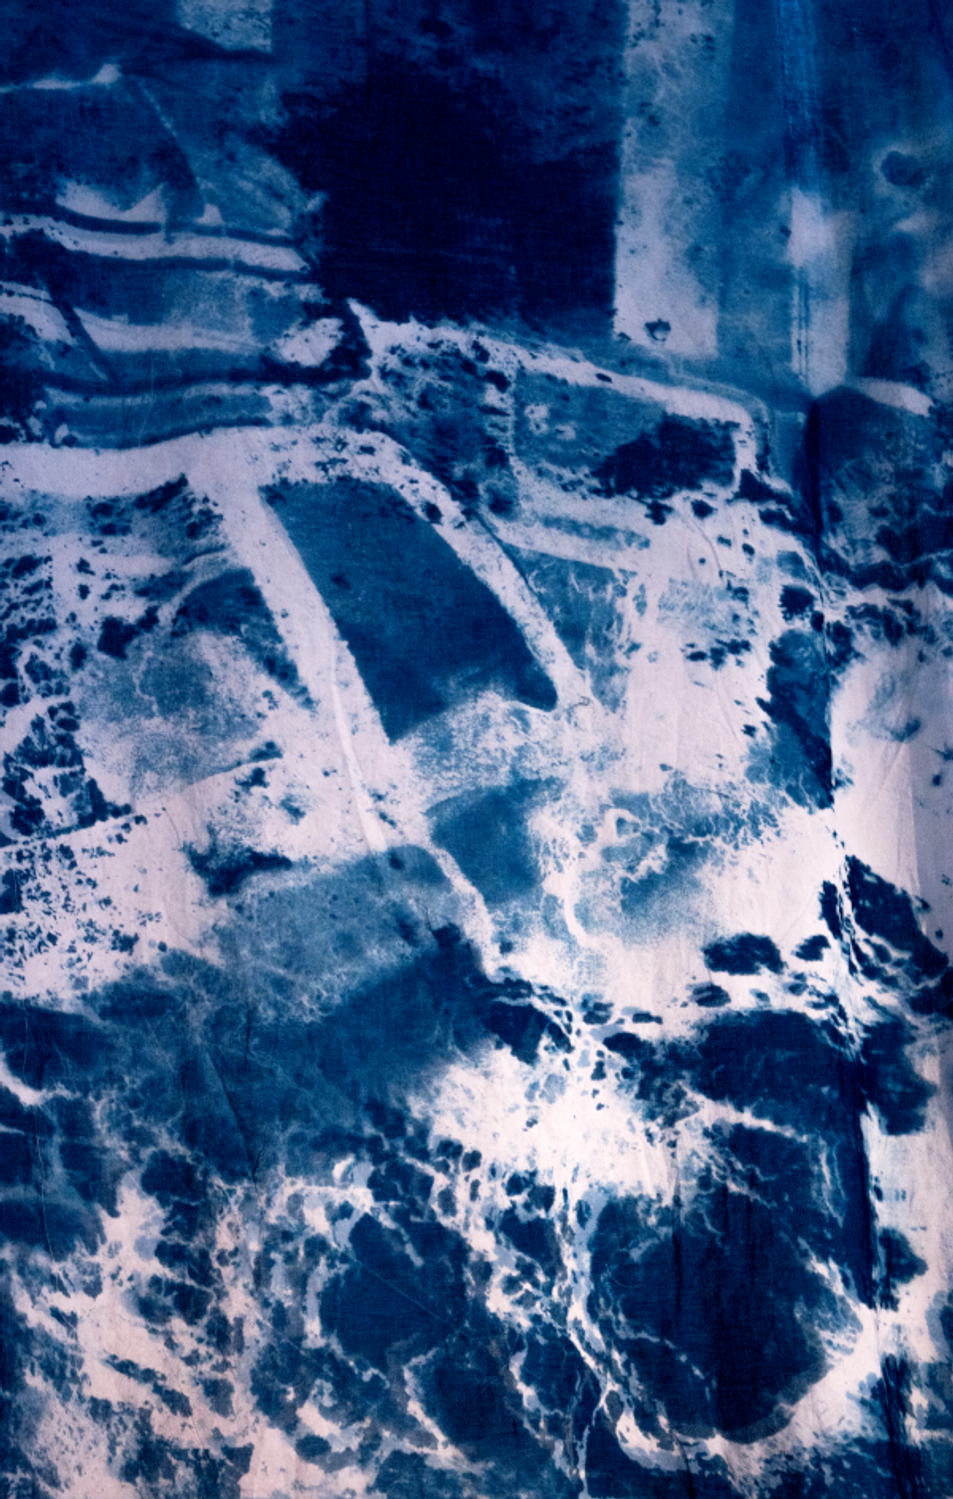 Détail de l'oeuvre "Cyanotype garnd format" de Maëlle Bléteau